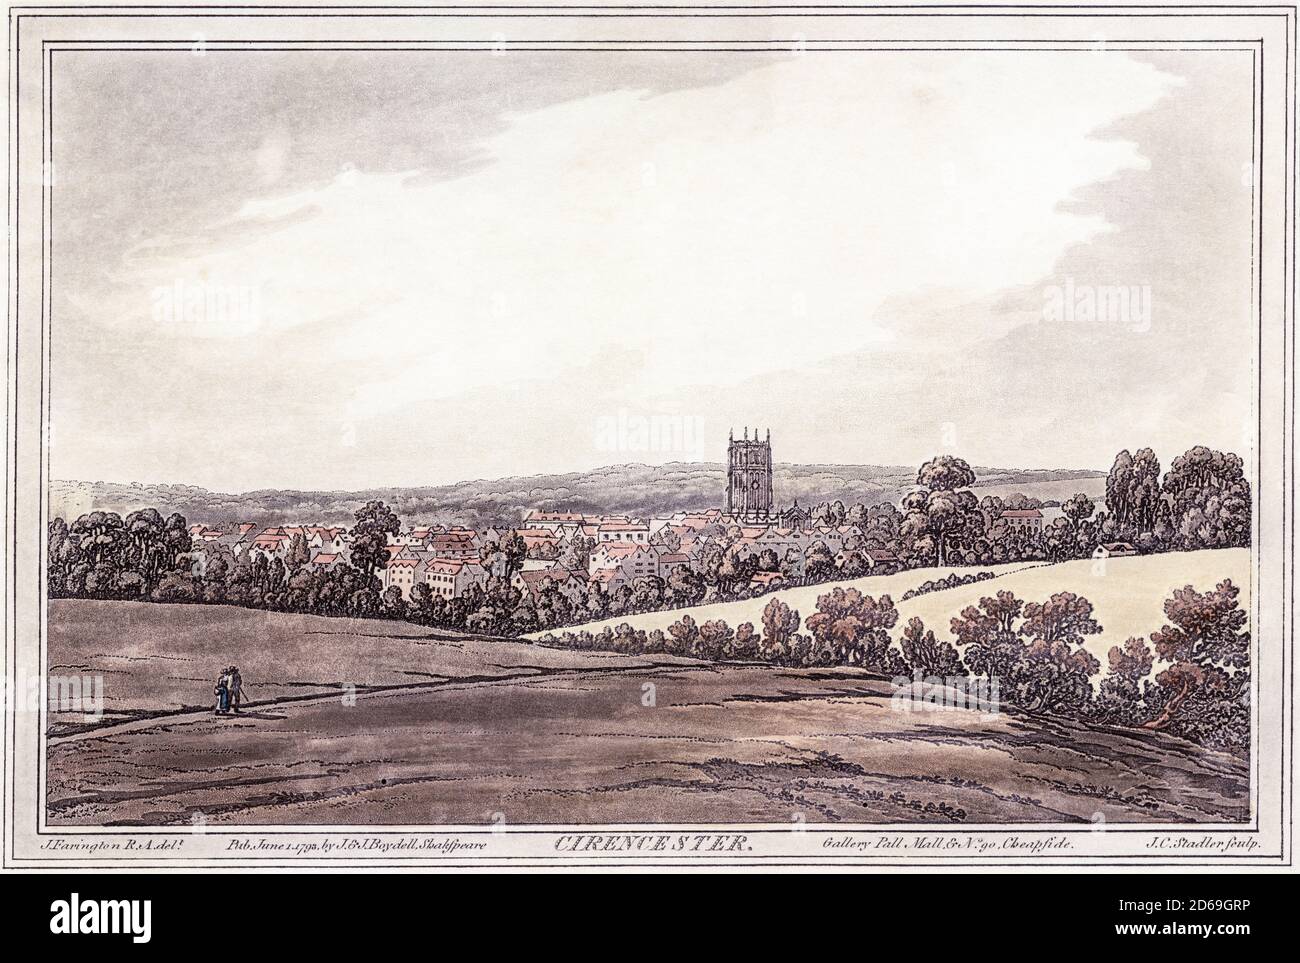 Una acuatinta de Cirencester en Gloucestershire escaneada a alta resolución de la Historia del Támesis por John Boydell impreso en 1793. Foto de stock